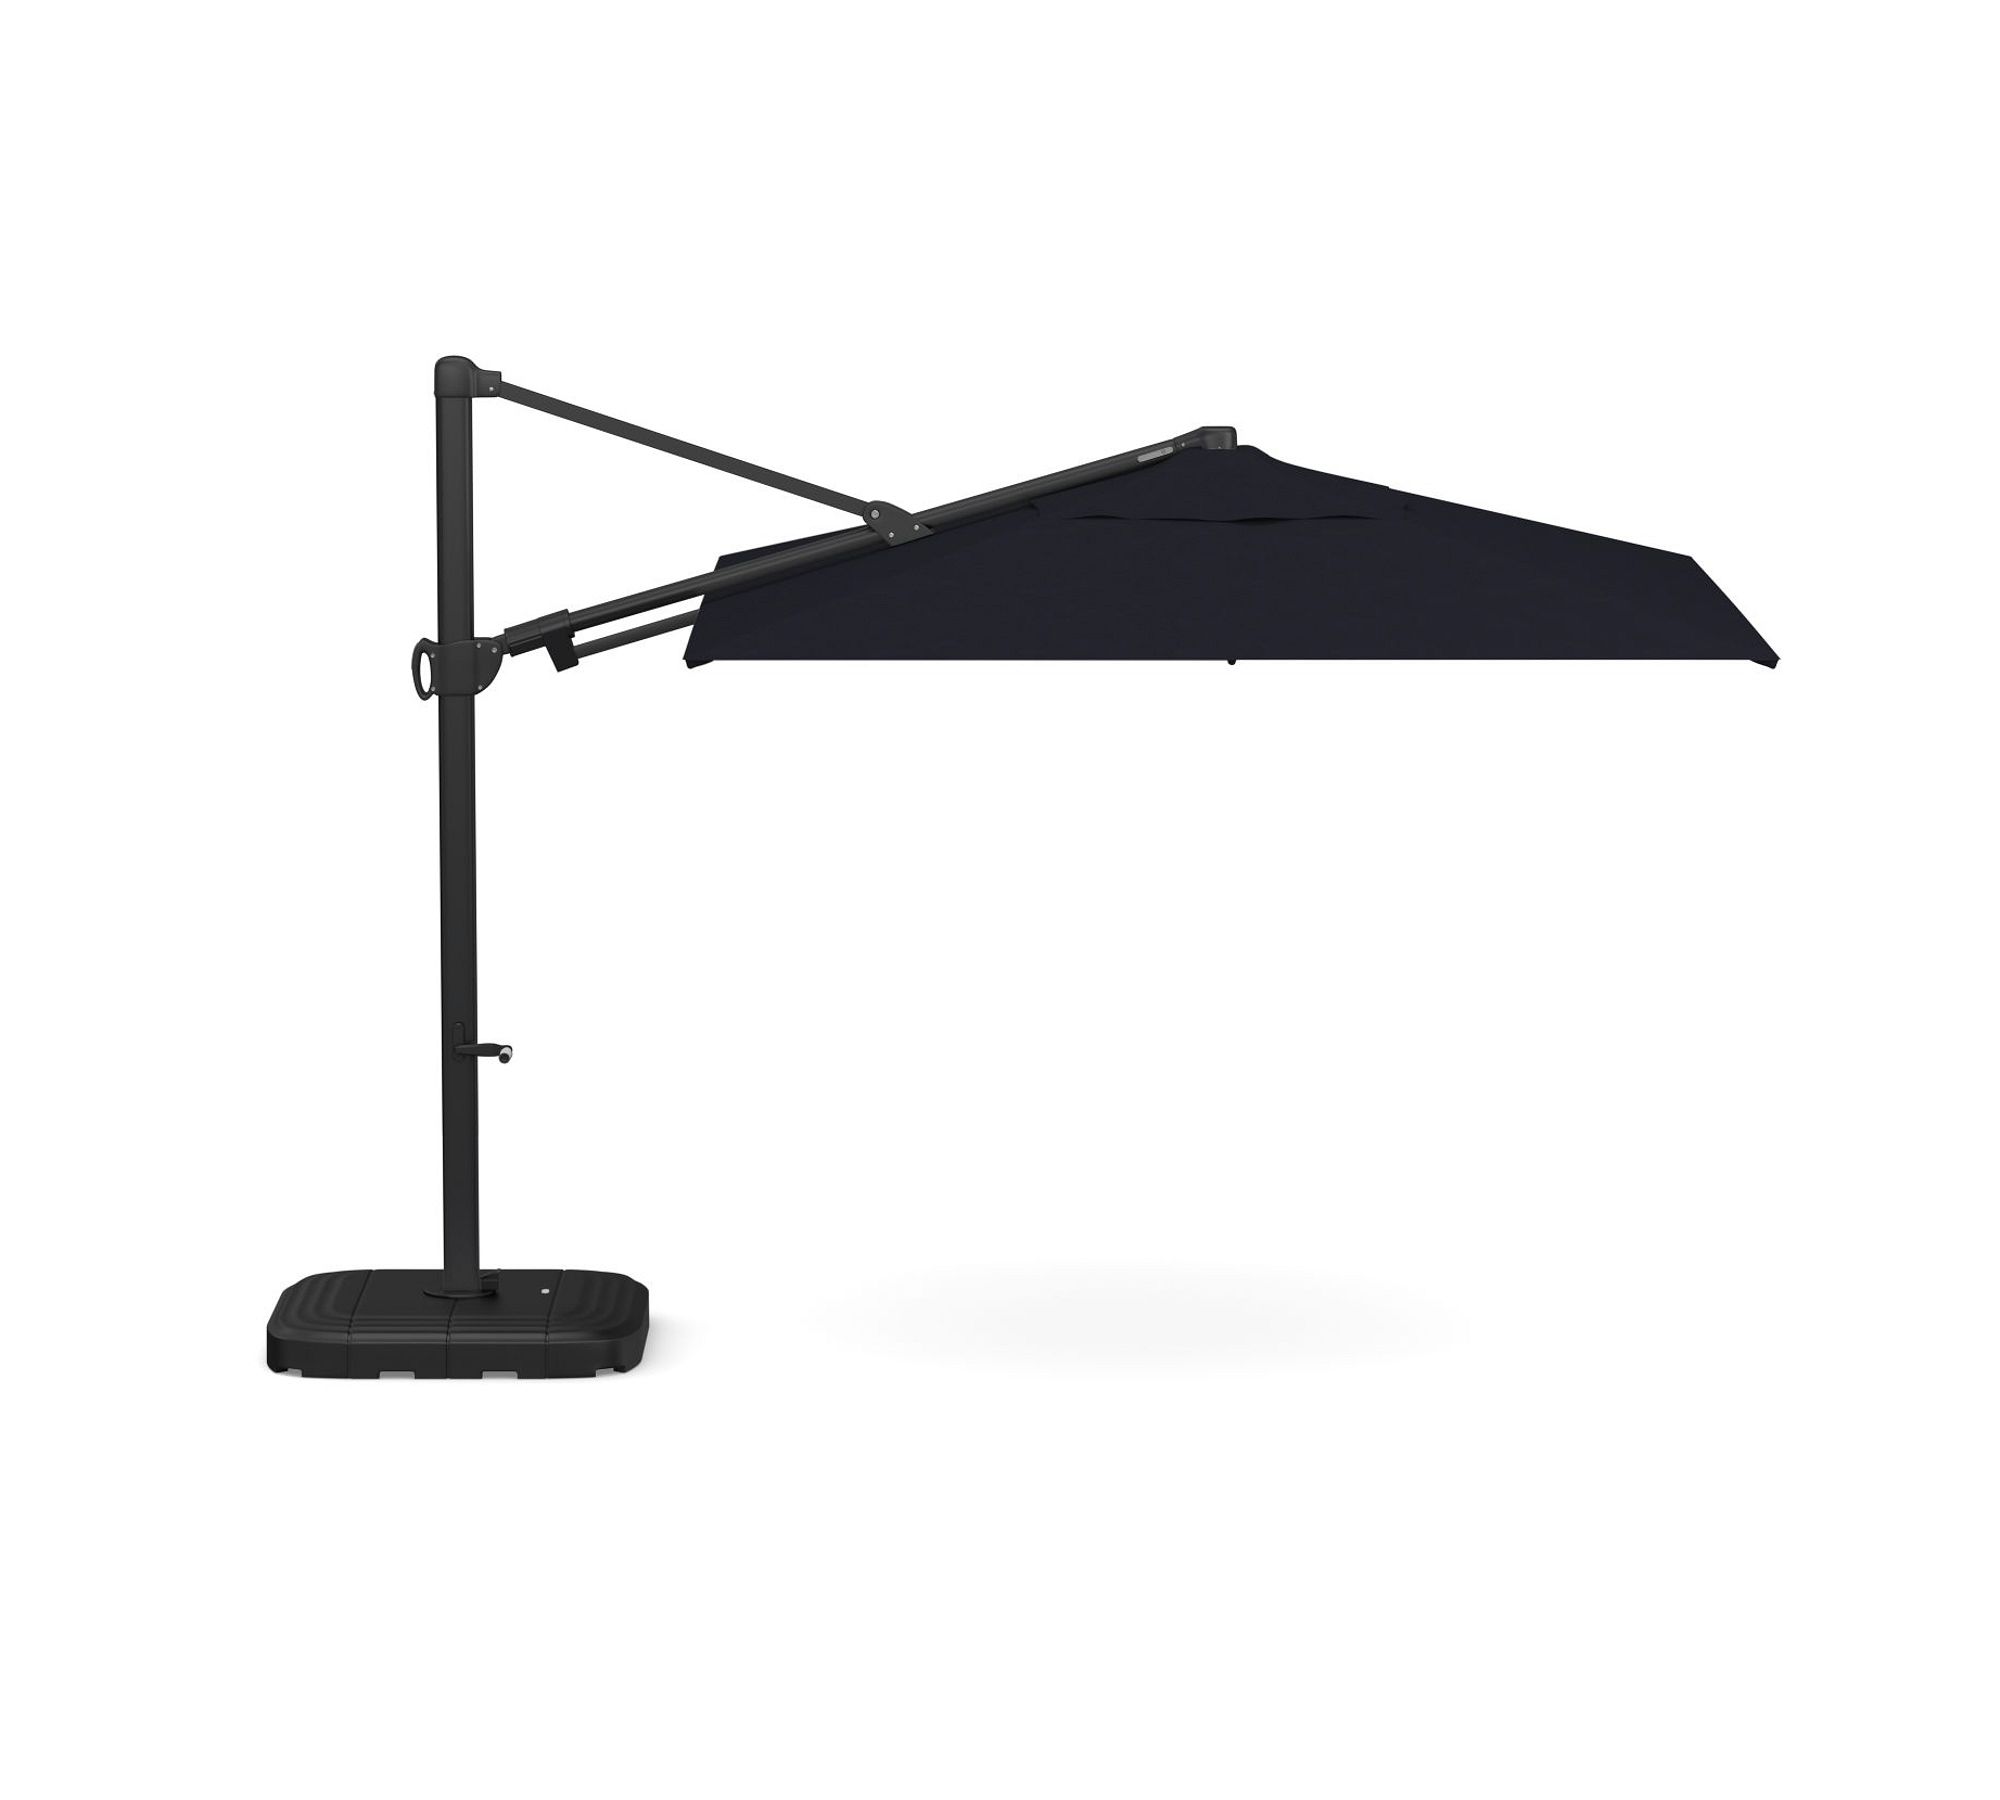 Premium 10' Square Cantilever Outdoor Patio Umbrella - Rustproof Aluminum Frame with Base